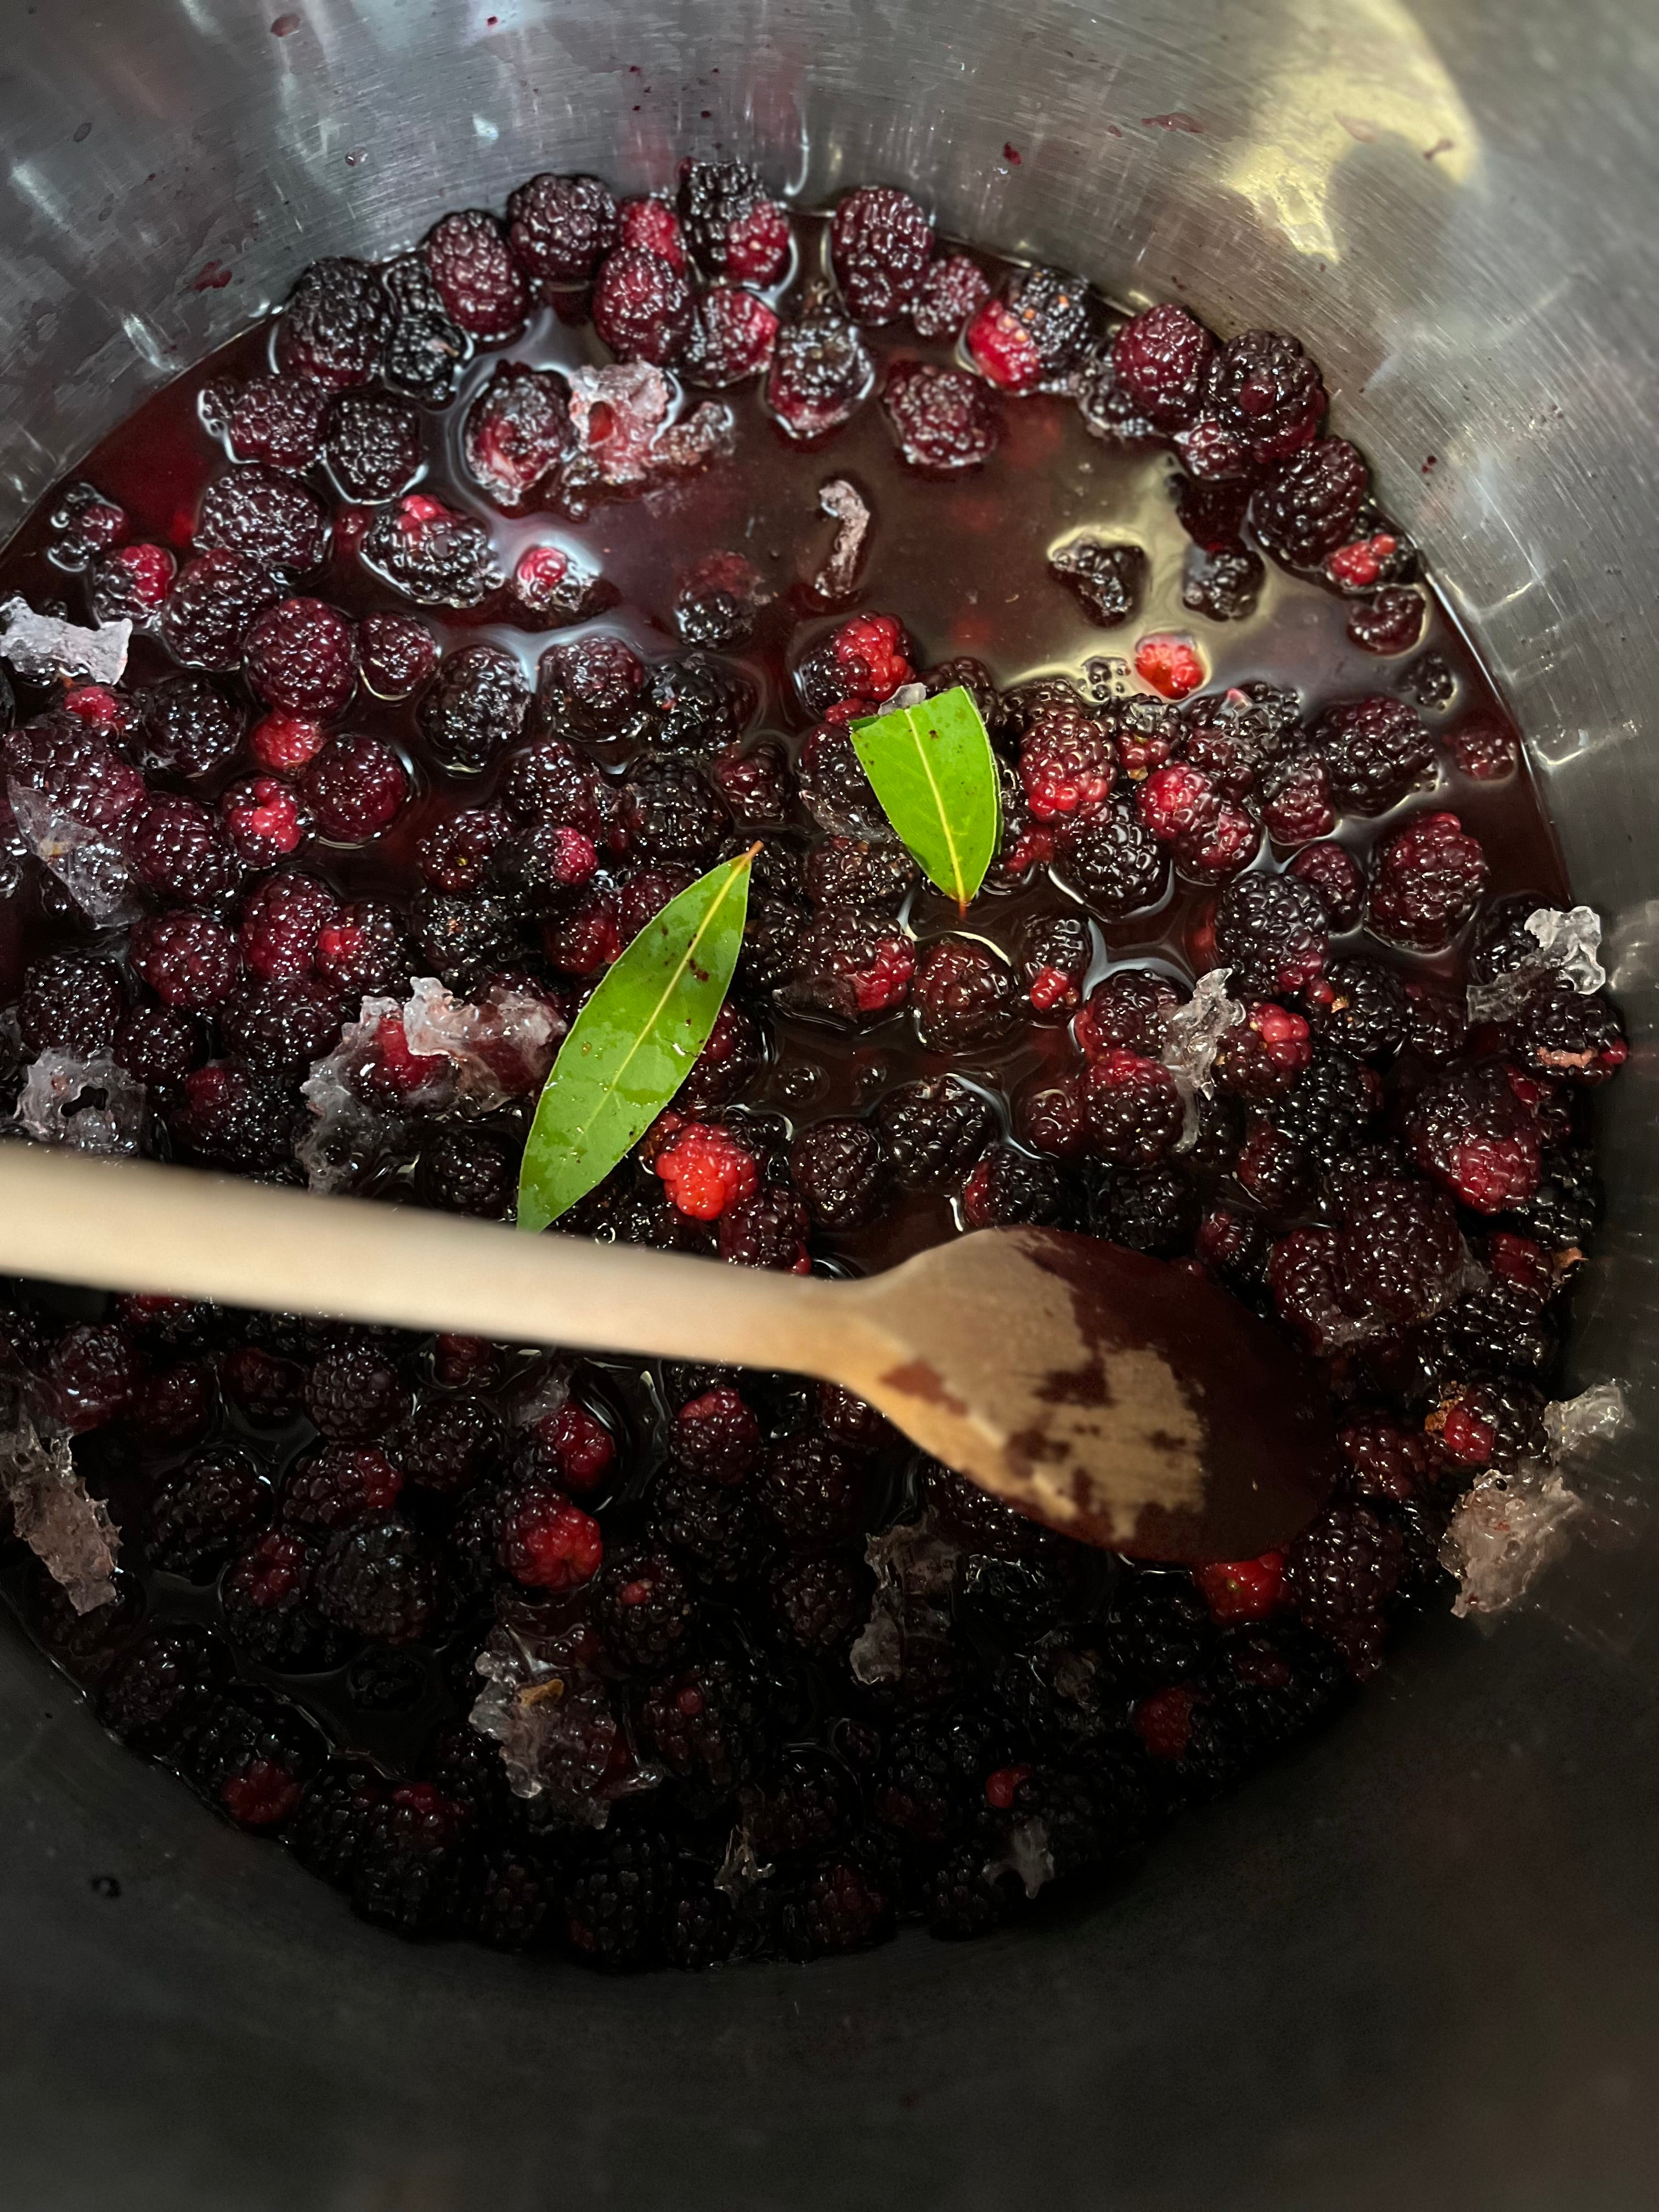 blackberries in a saucepan cooking